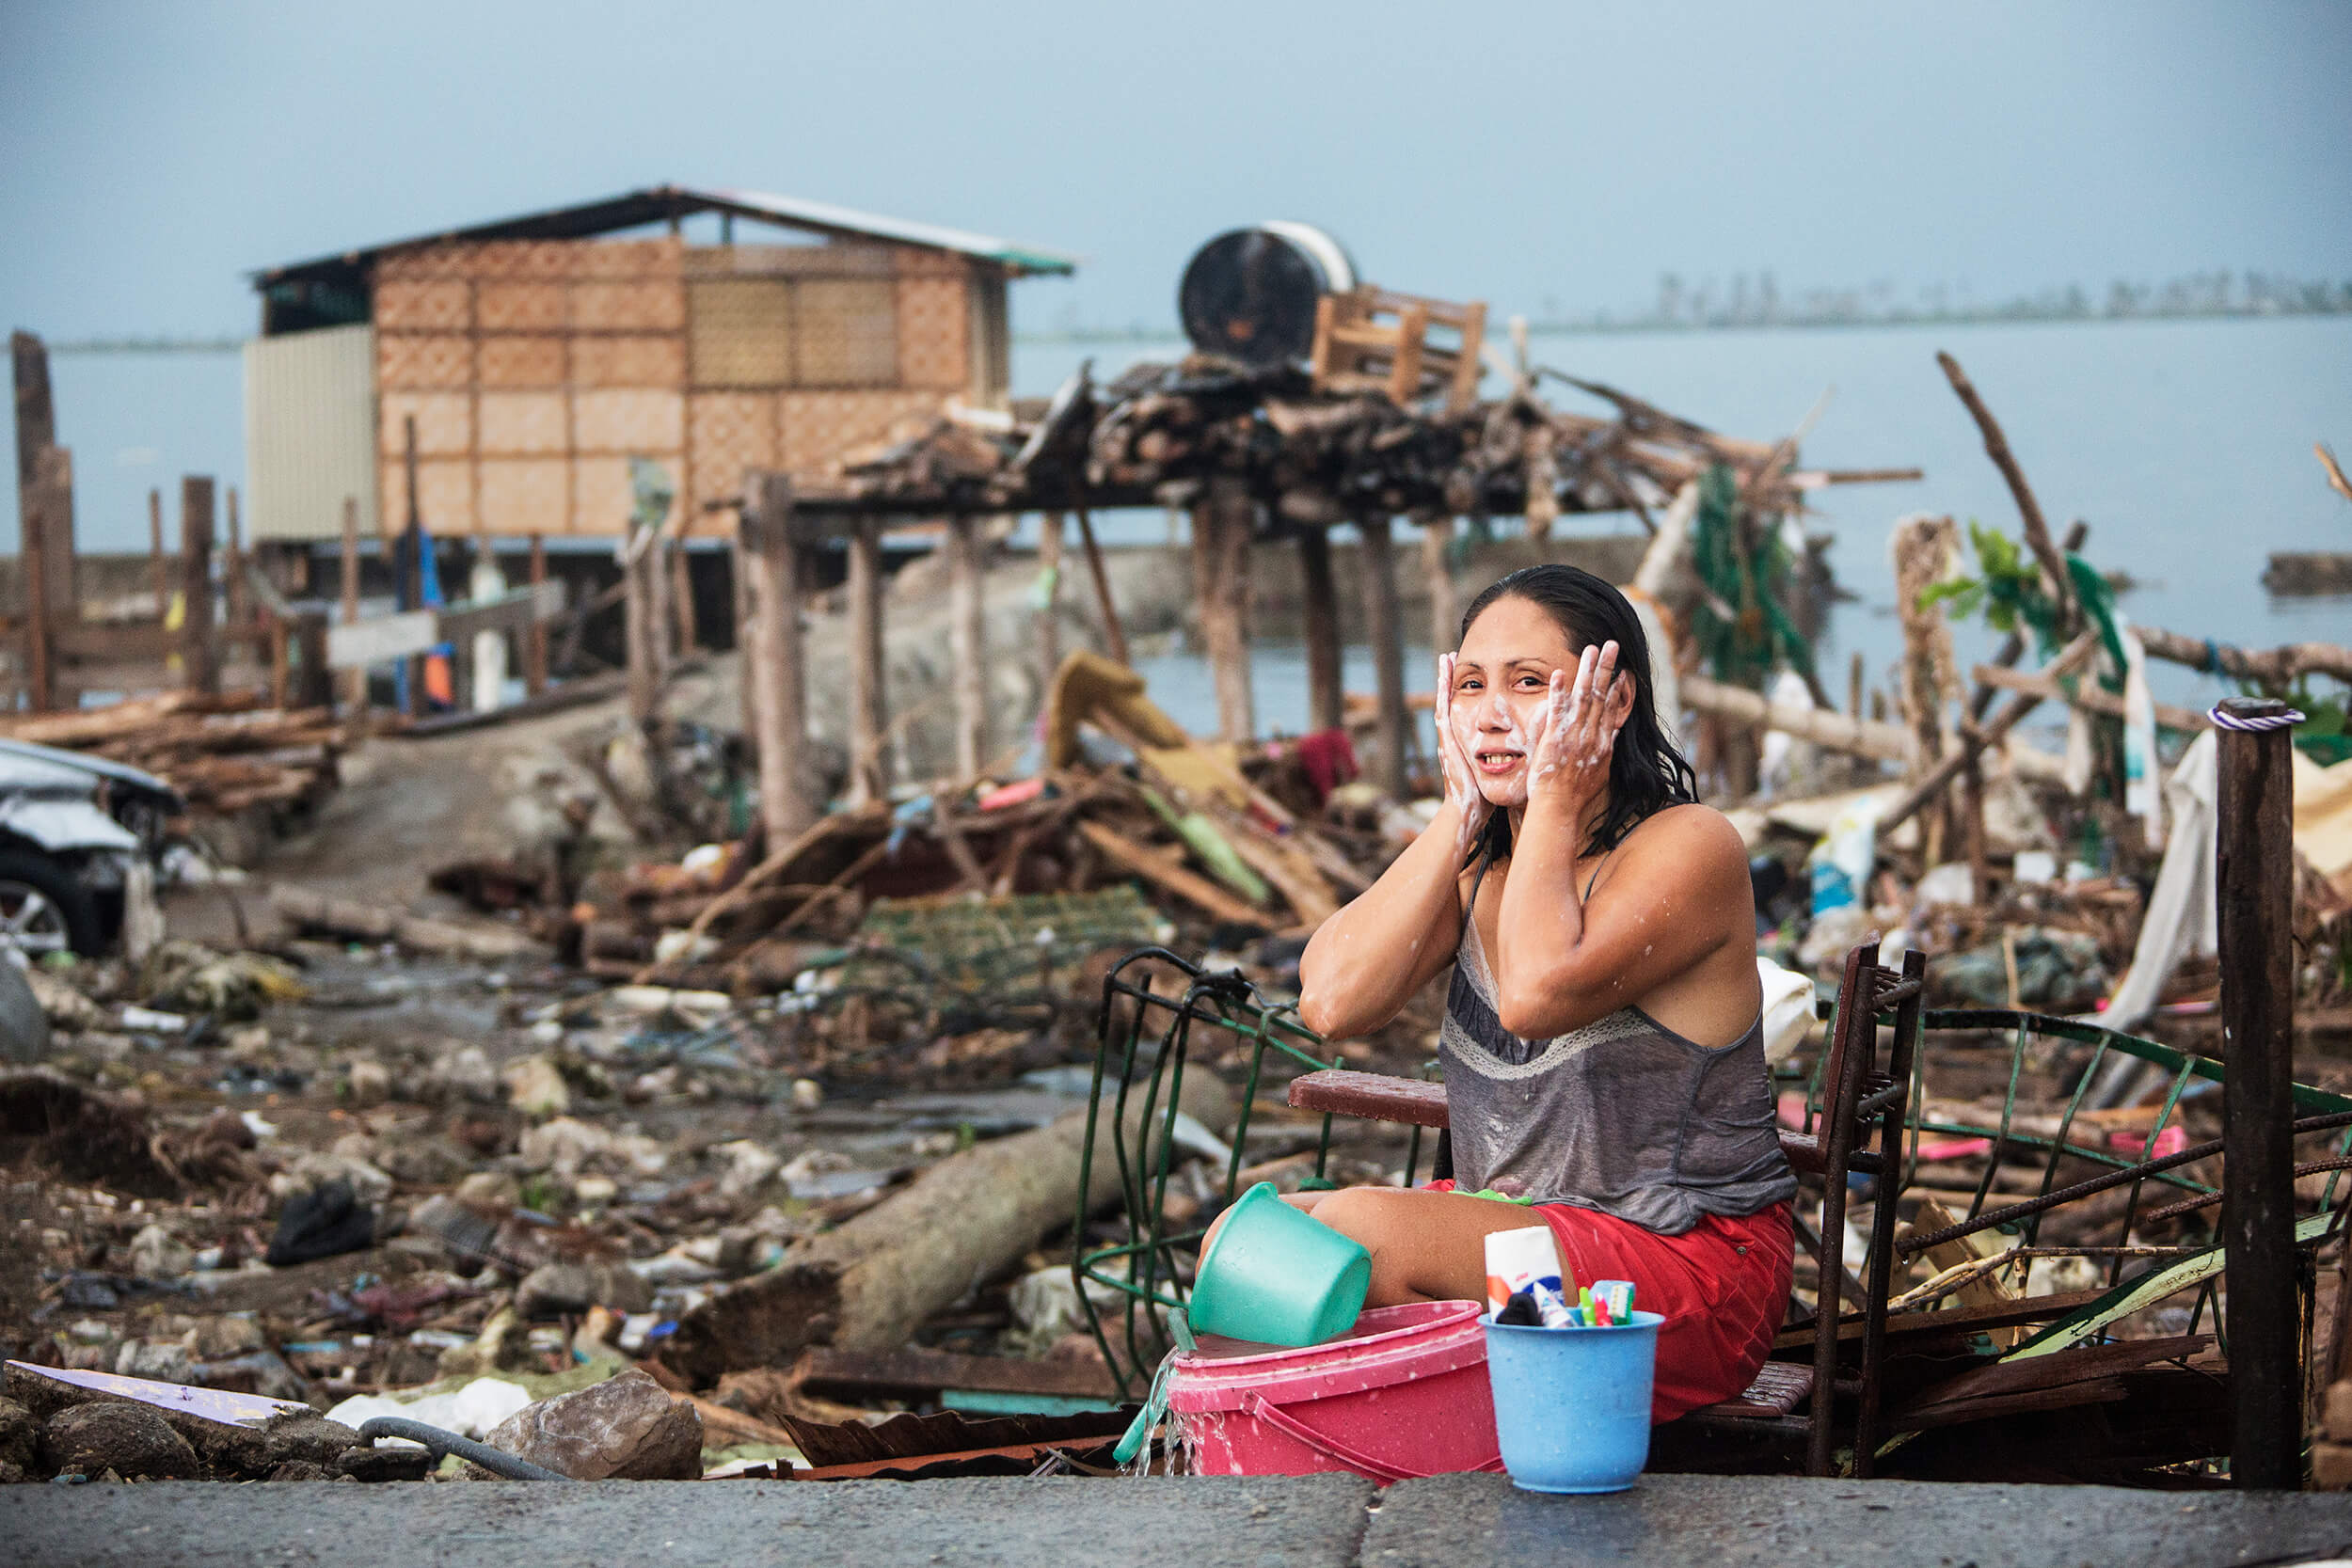  The city of Tacloban after Typhoon Haiyan November 2013. 